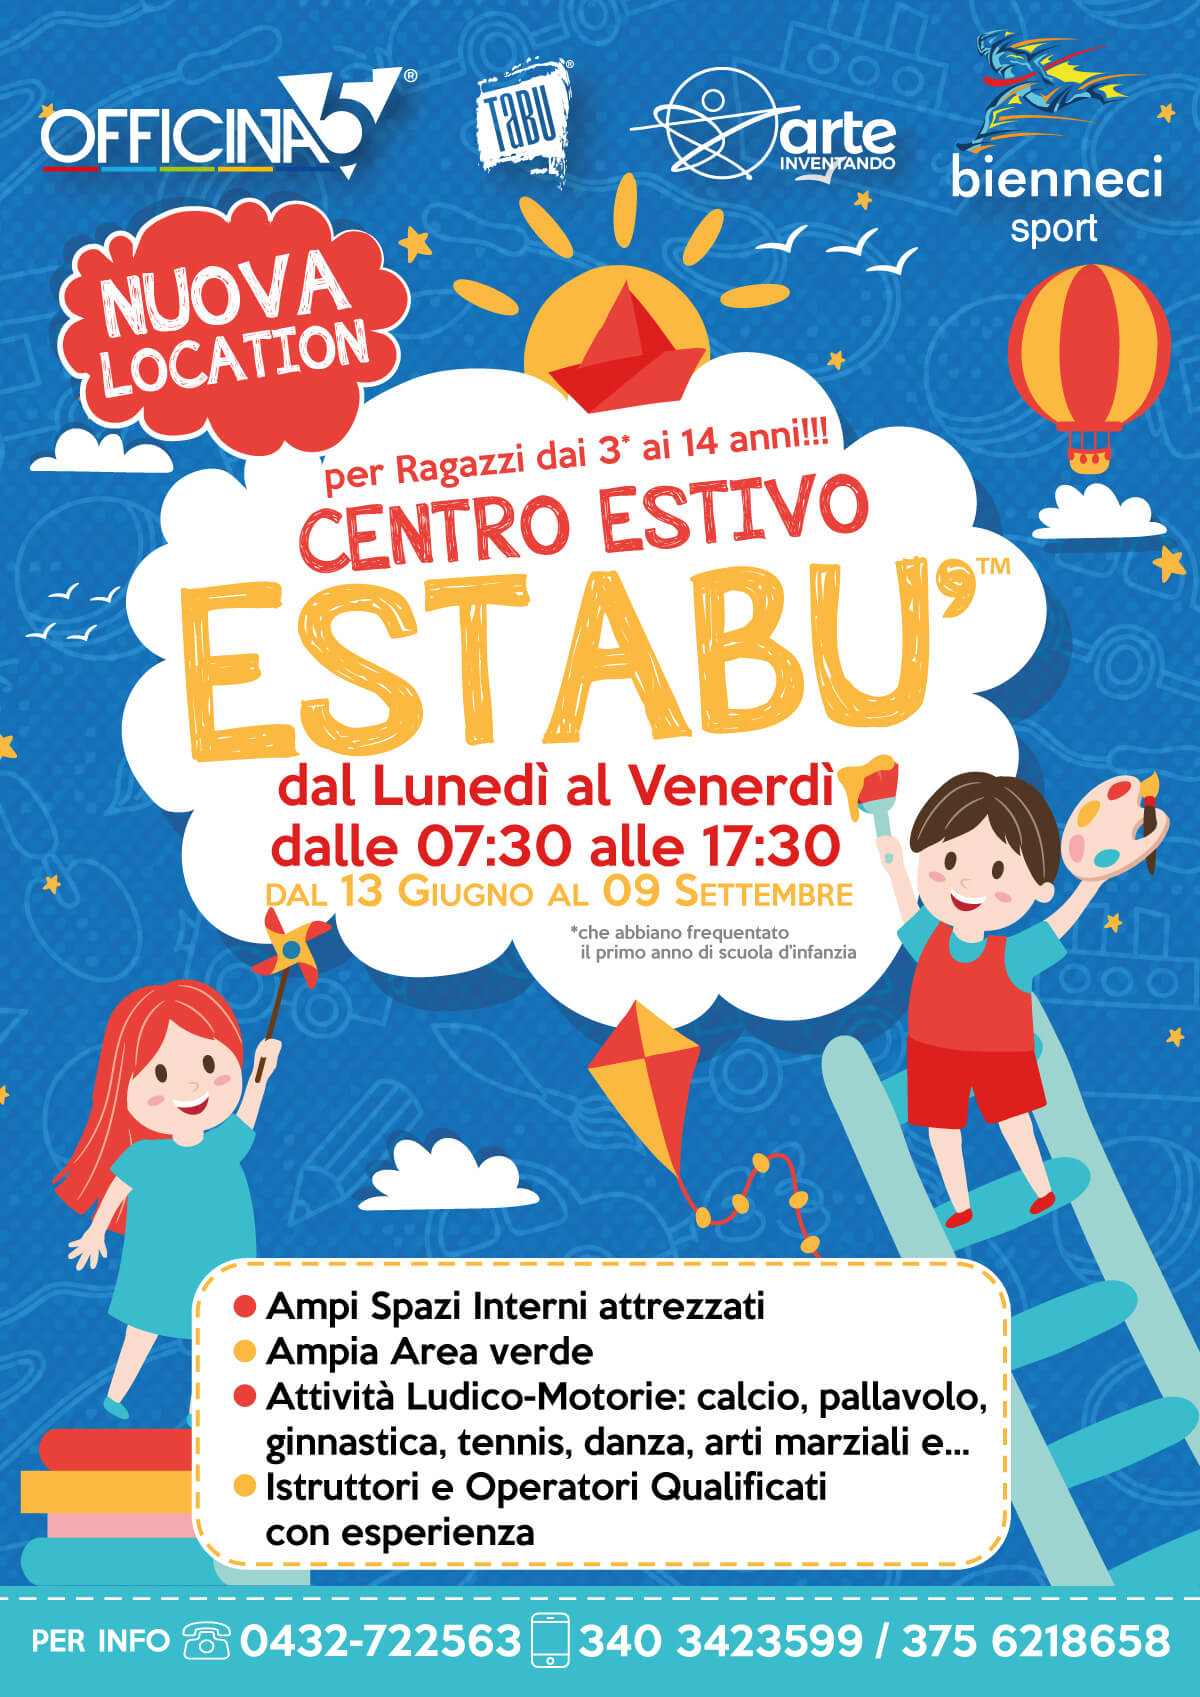 EsTaBù è il centro vacanze ideale per i bambini e i ragazzi dai 3 ai 14 anni dei comuni di Premariacco, Moimacco, Pradamano, Remanzacco e Cividale!